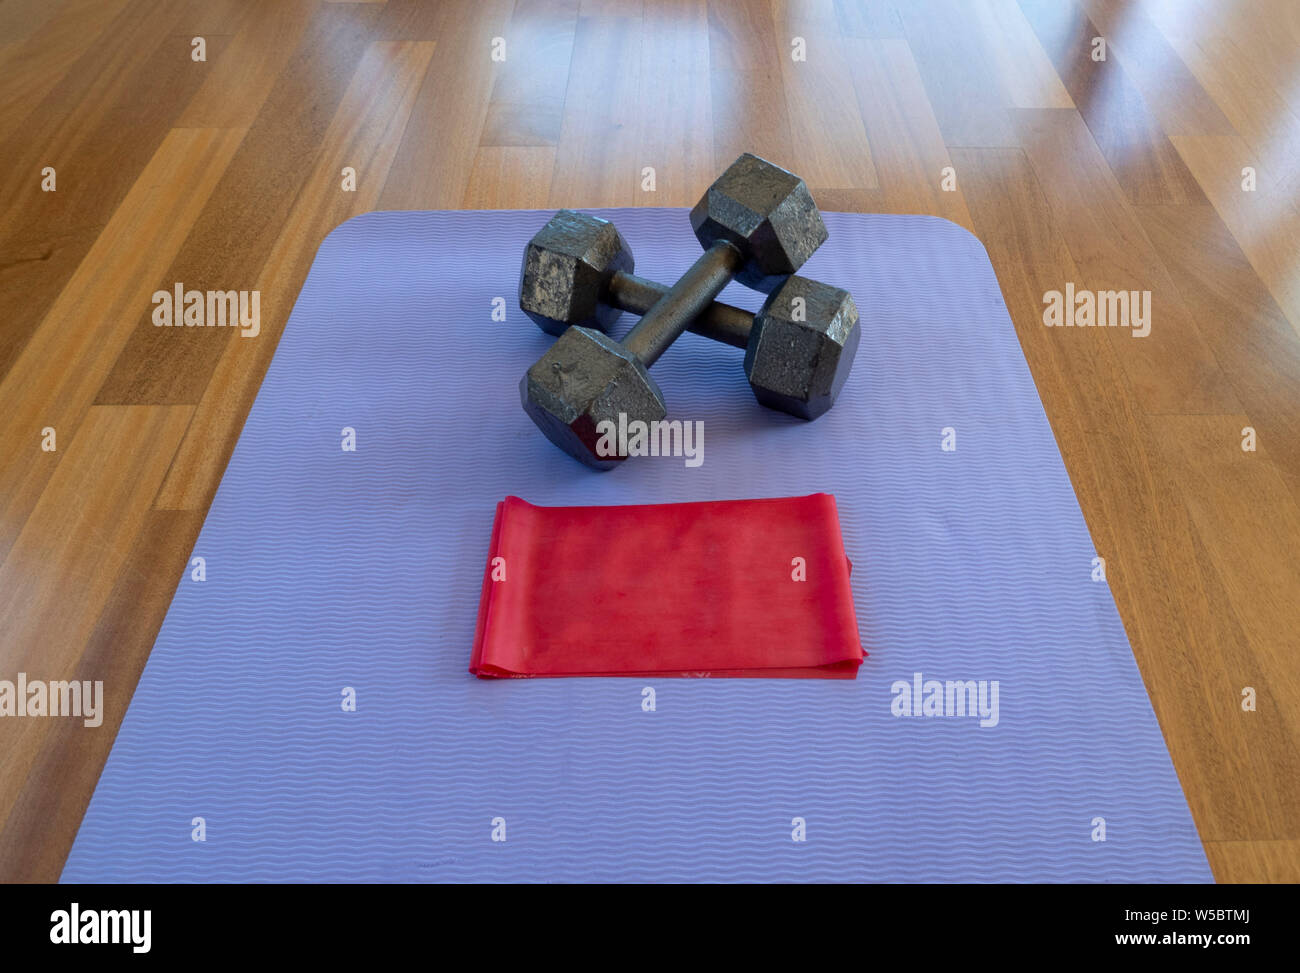 Attraversato manubri e banda di esercizio su un materassino yoga per un allenamento domestico Foto Stock